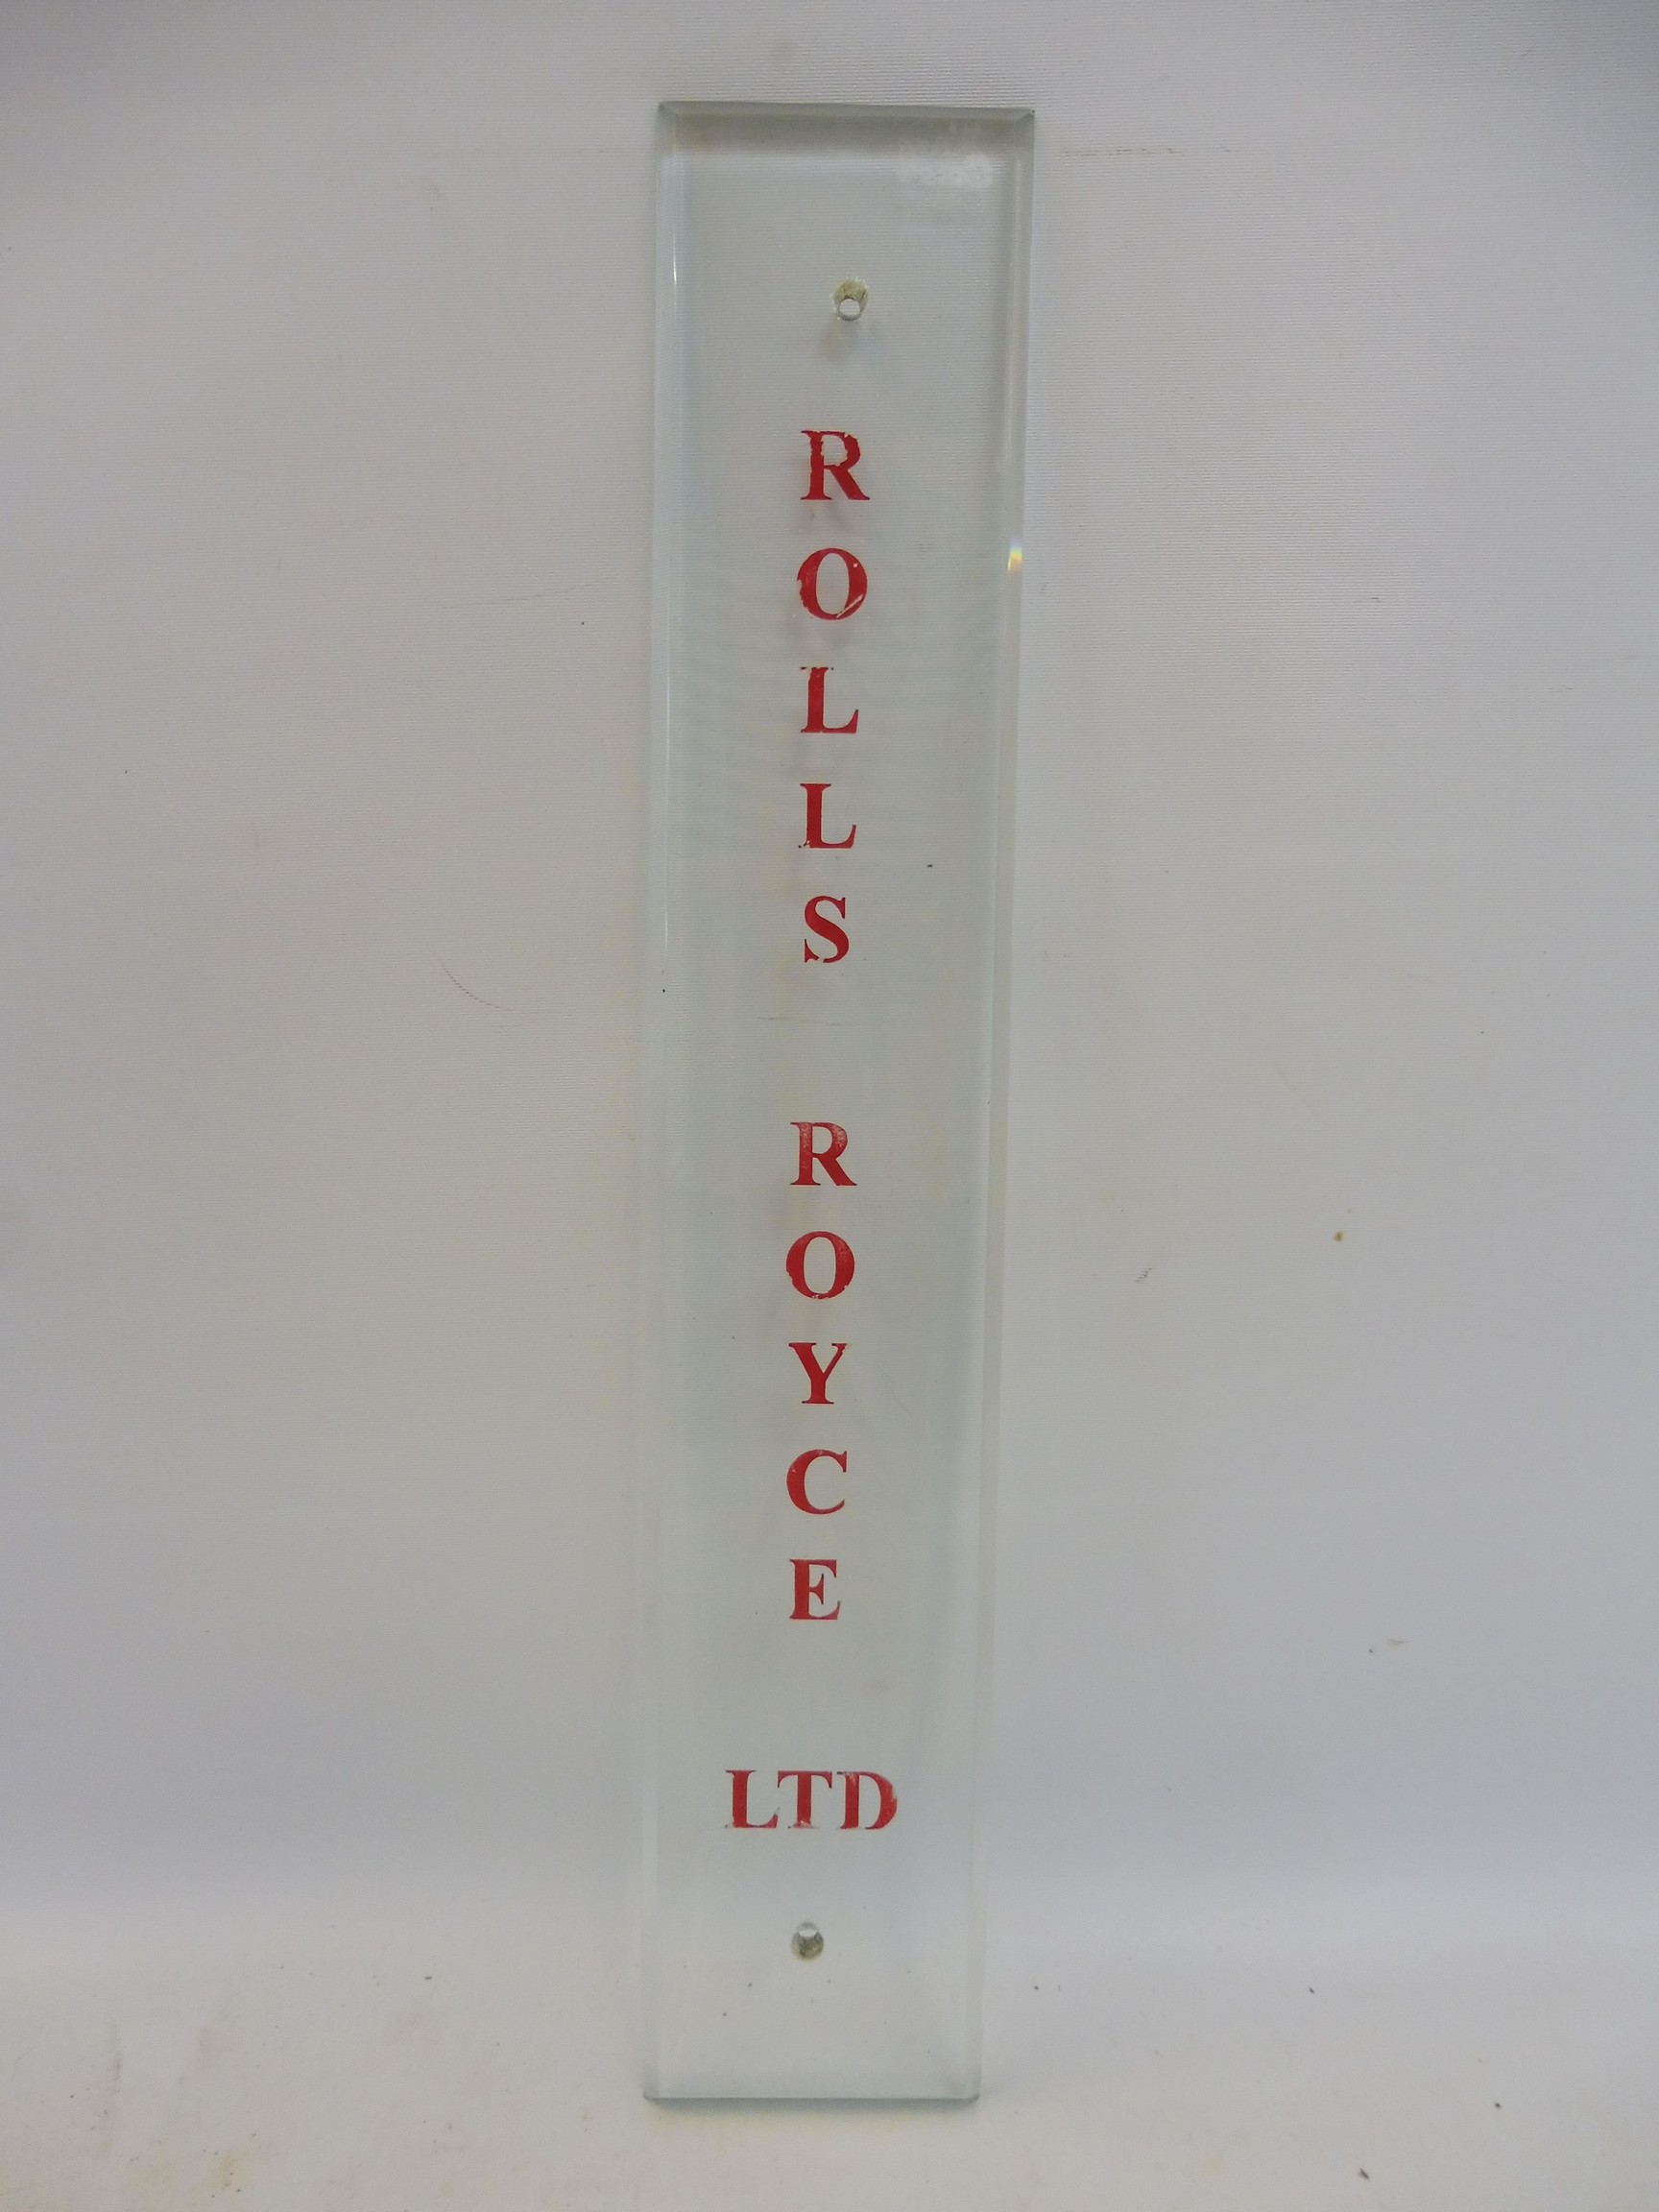 A rare Rolls-Royce Ltd glass finger/door plate advertising sign, 2 3/4 x 15 1/4".